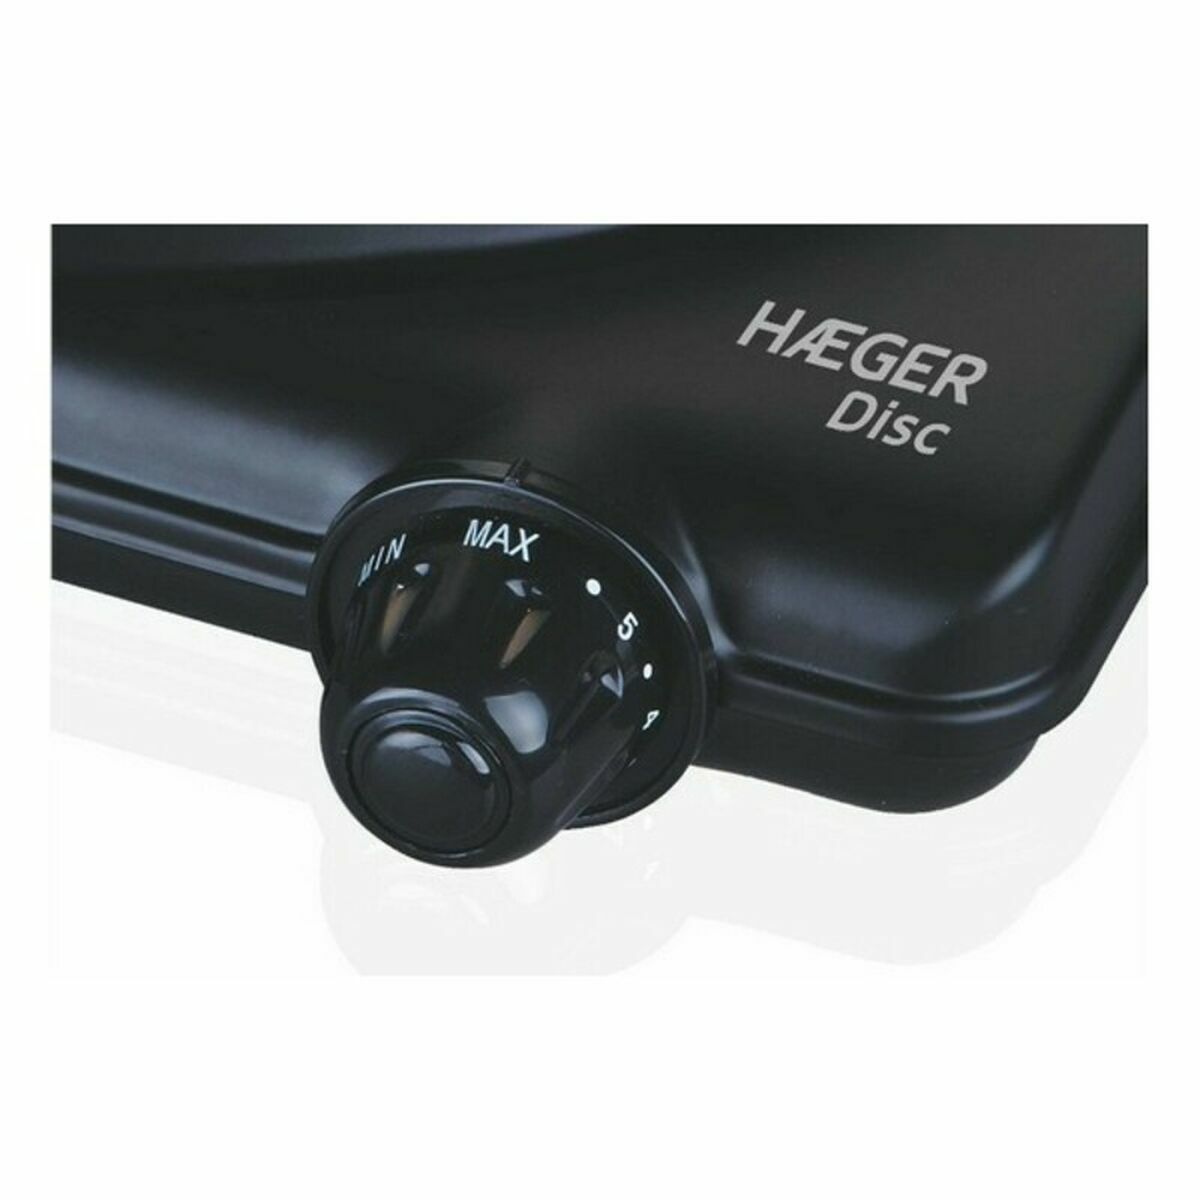 Haeger Elektrokochfeld HP-01B.012A 1500 W Schwarz Mehrfarbig